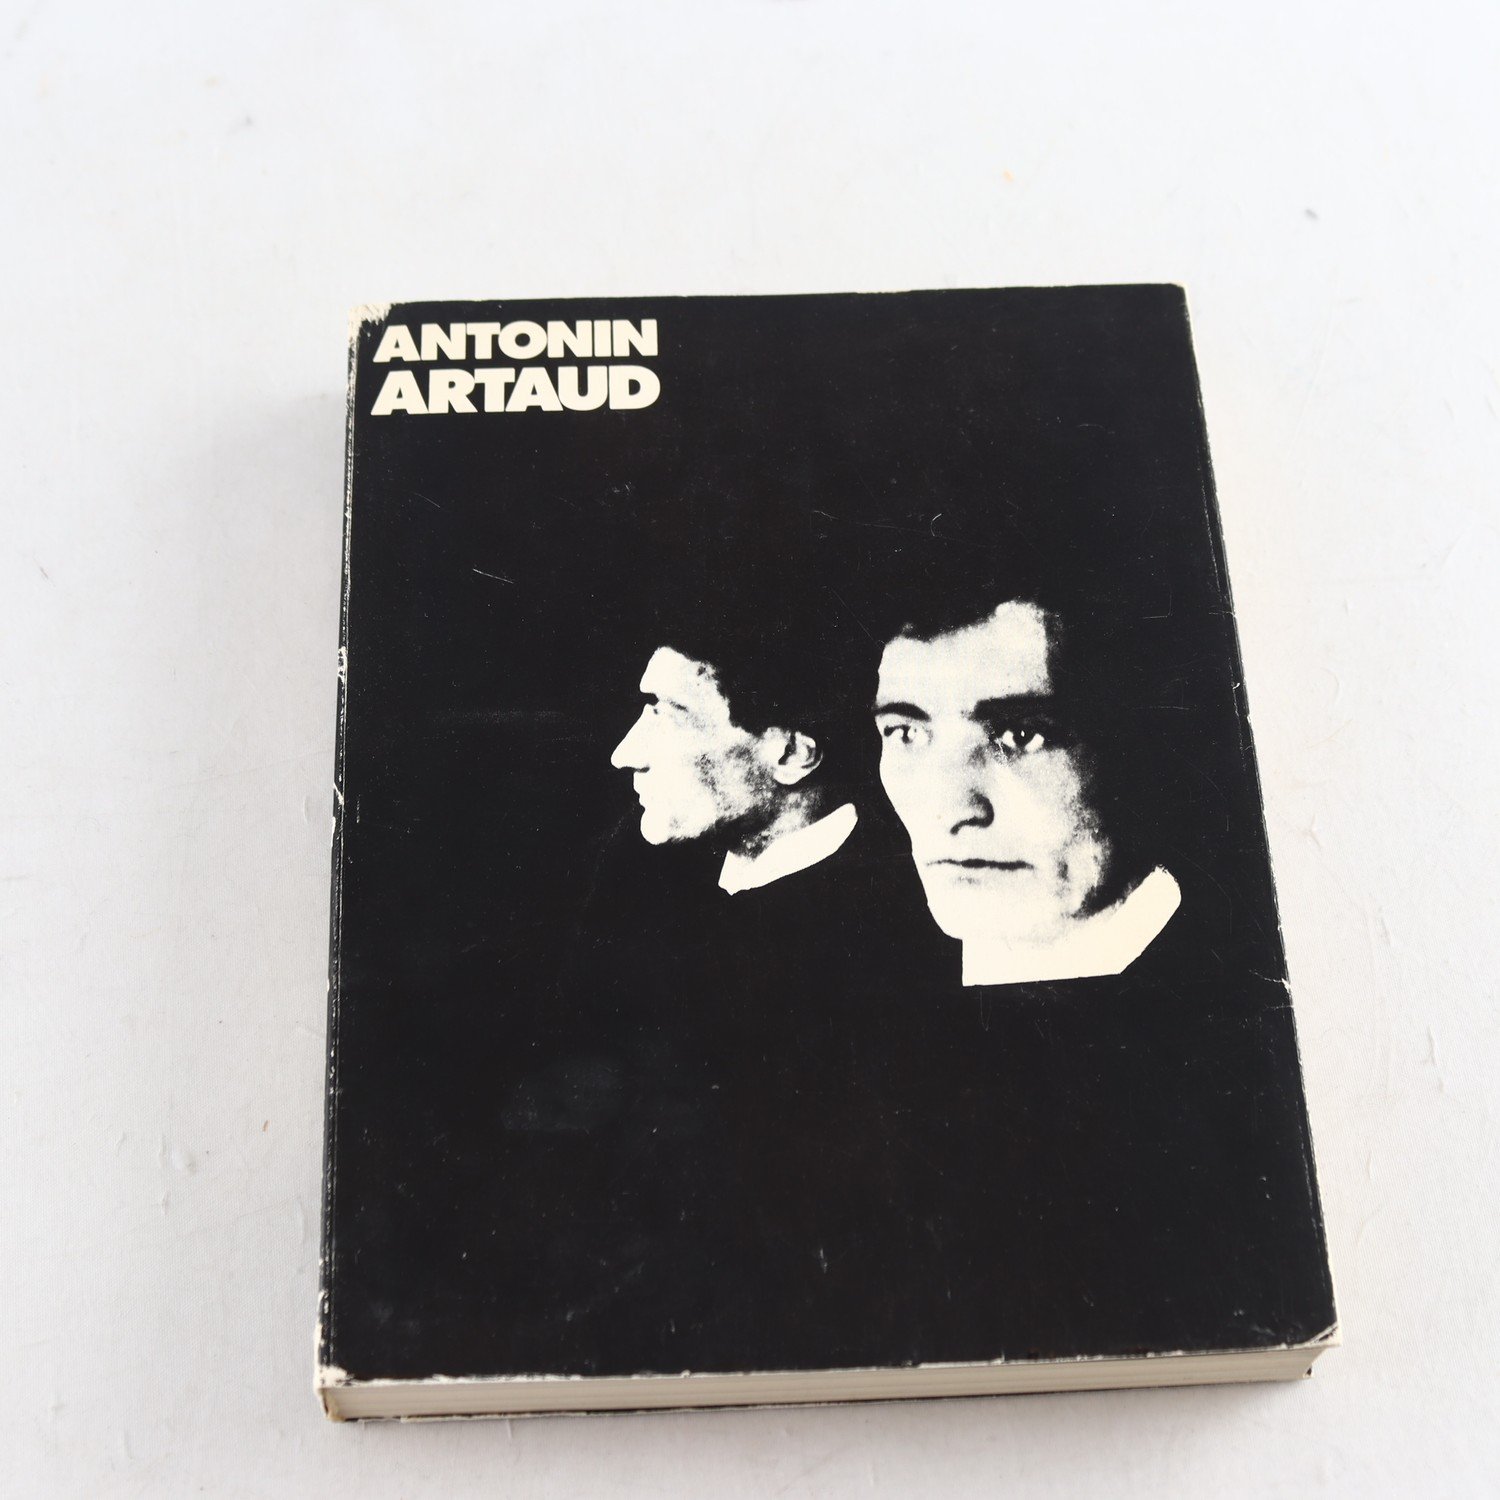 Antonin Artaud: Texter i urval, inledning och redigering av Percival